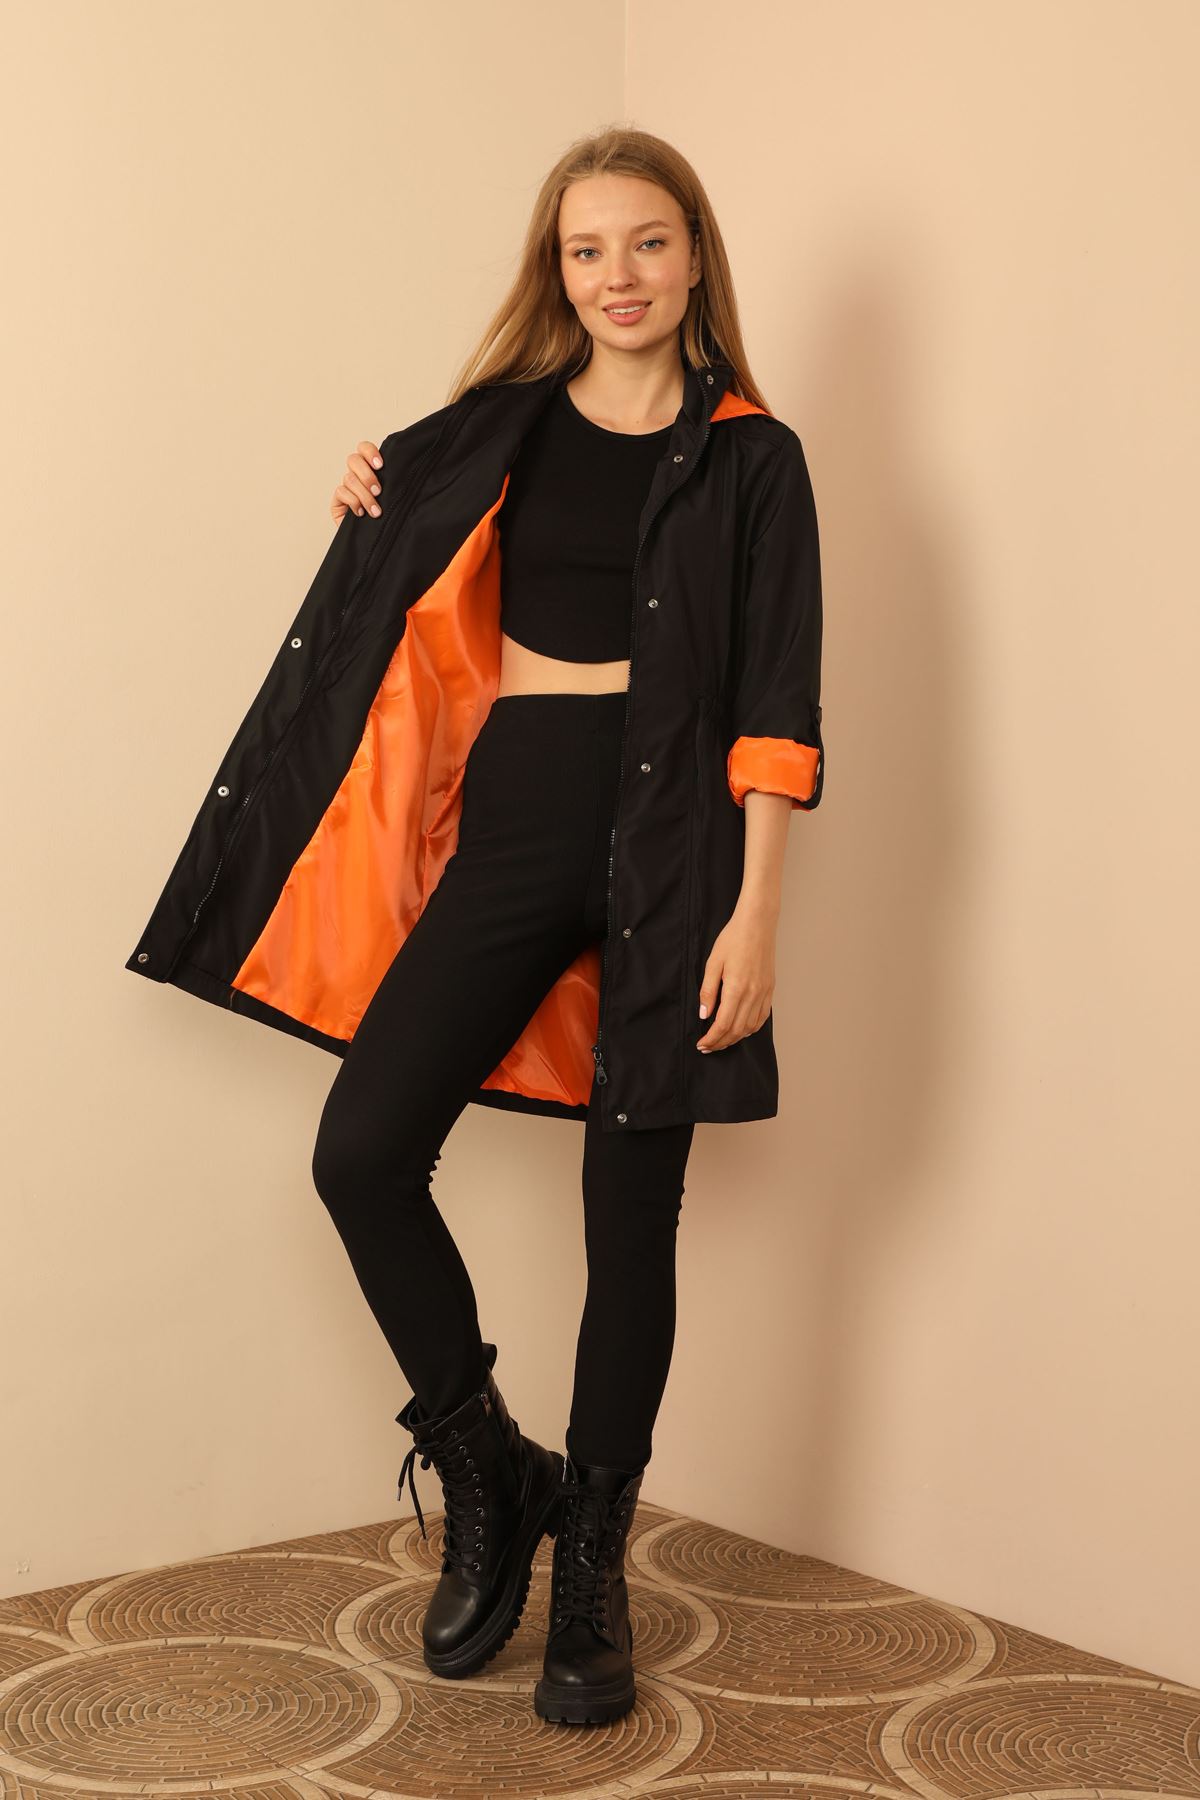 A wholesale clothing model wears Raincoat - Black And Orange, Turkish wholesale Raincoat of Kaktus Moda